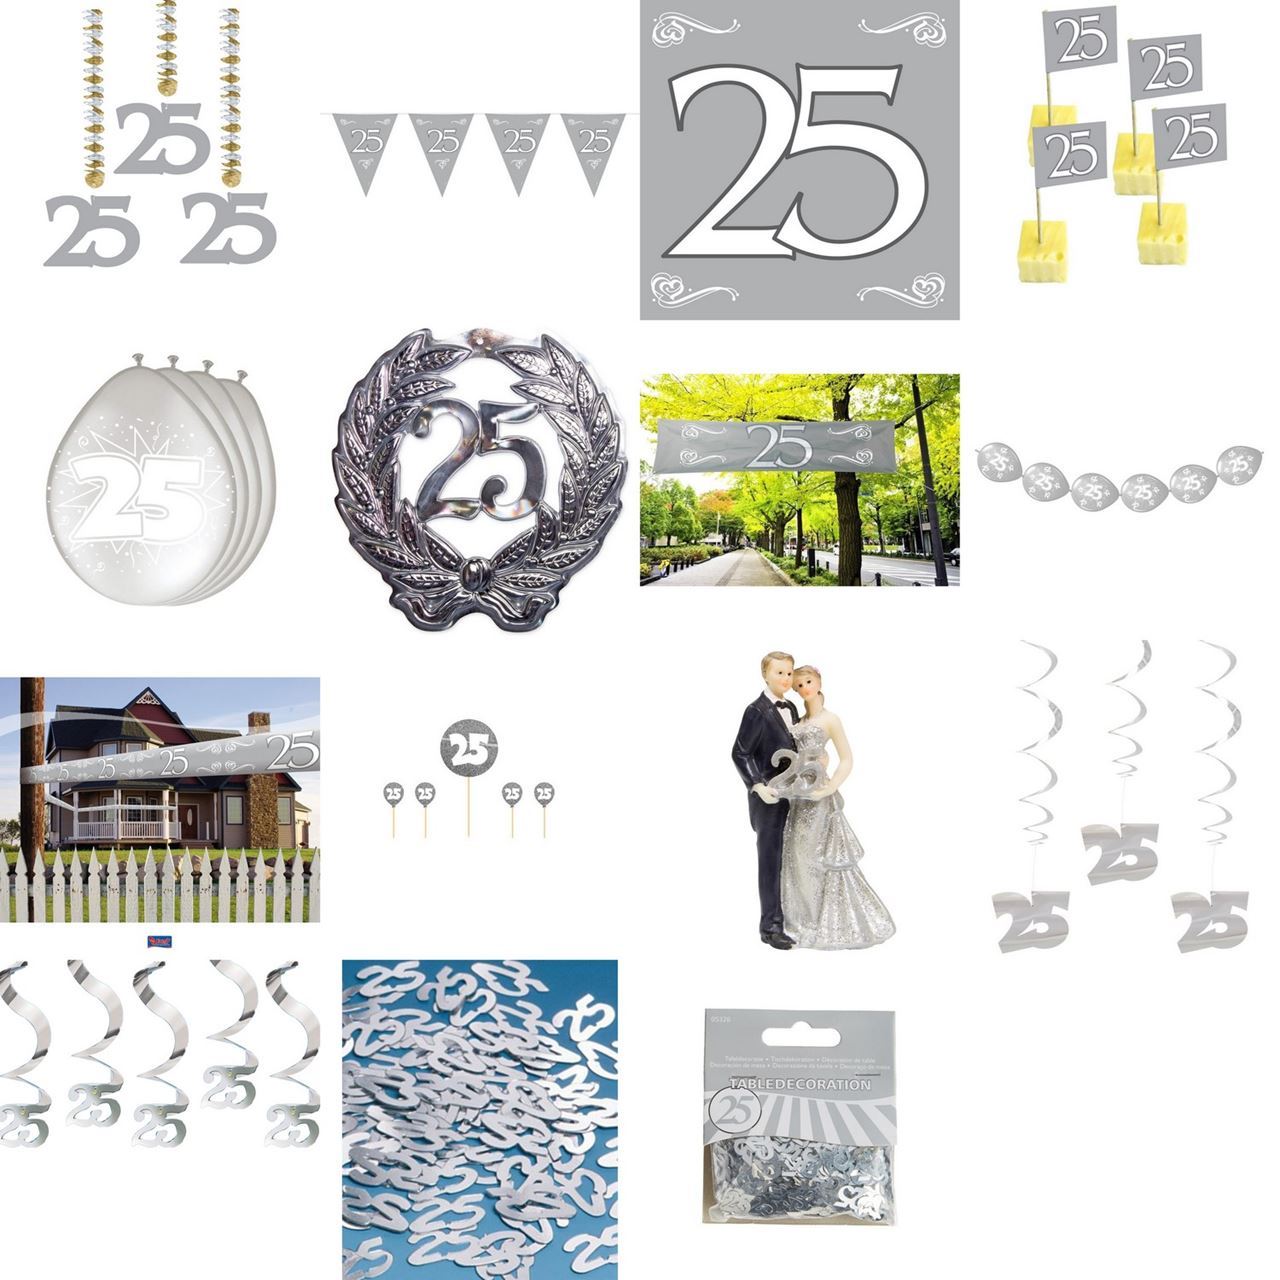 Silberhochzeit Jubilaum 25 Jahre Dekoration Silber Hochzeit Deko Auswahl Ebay